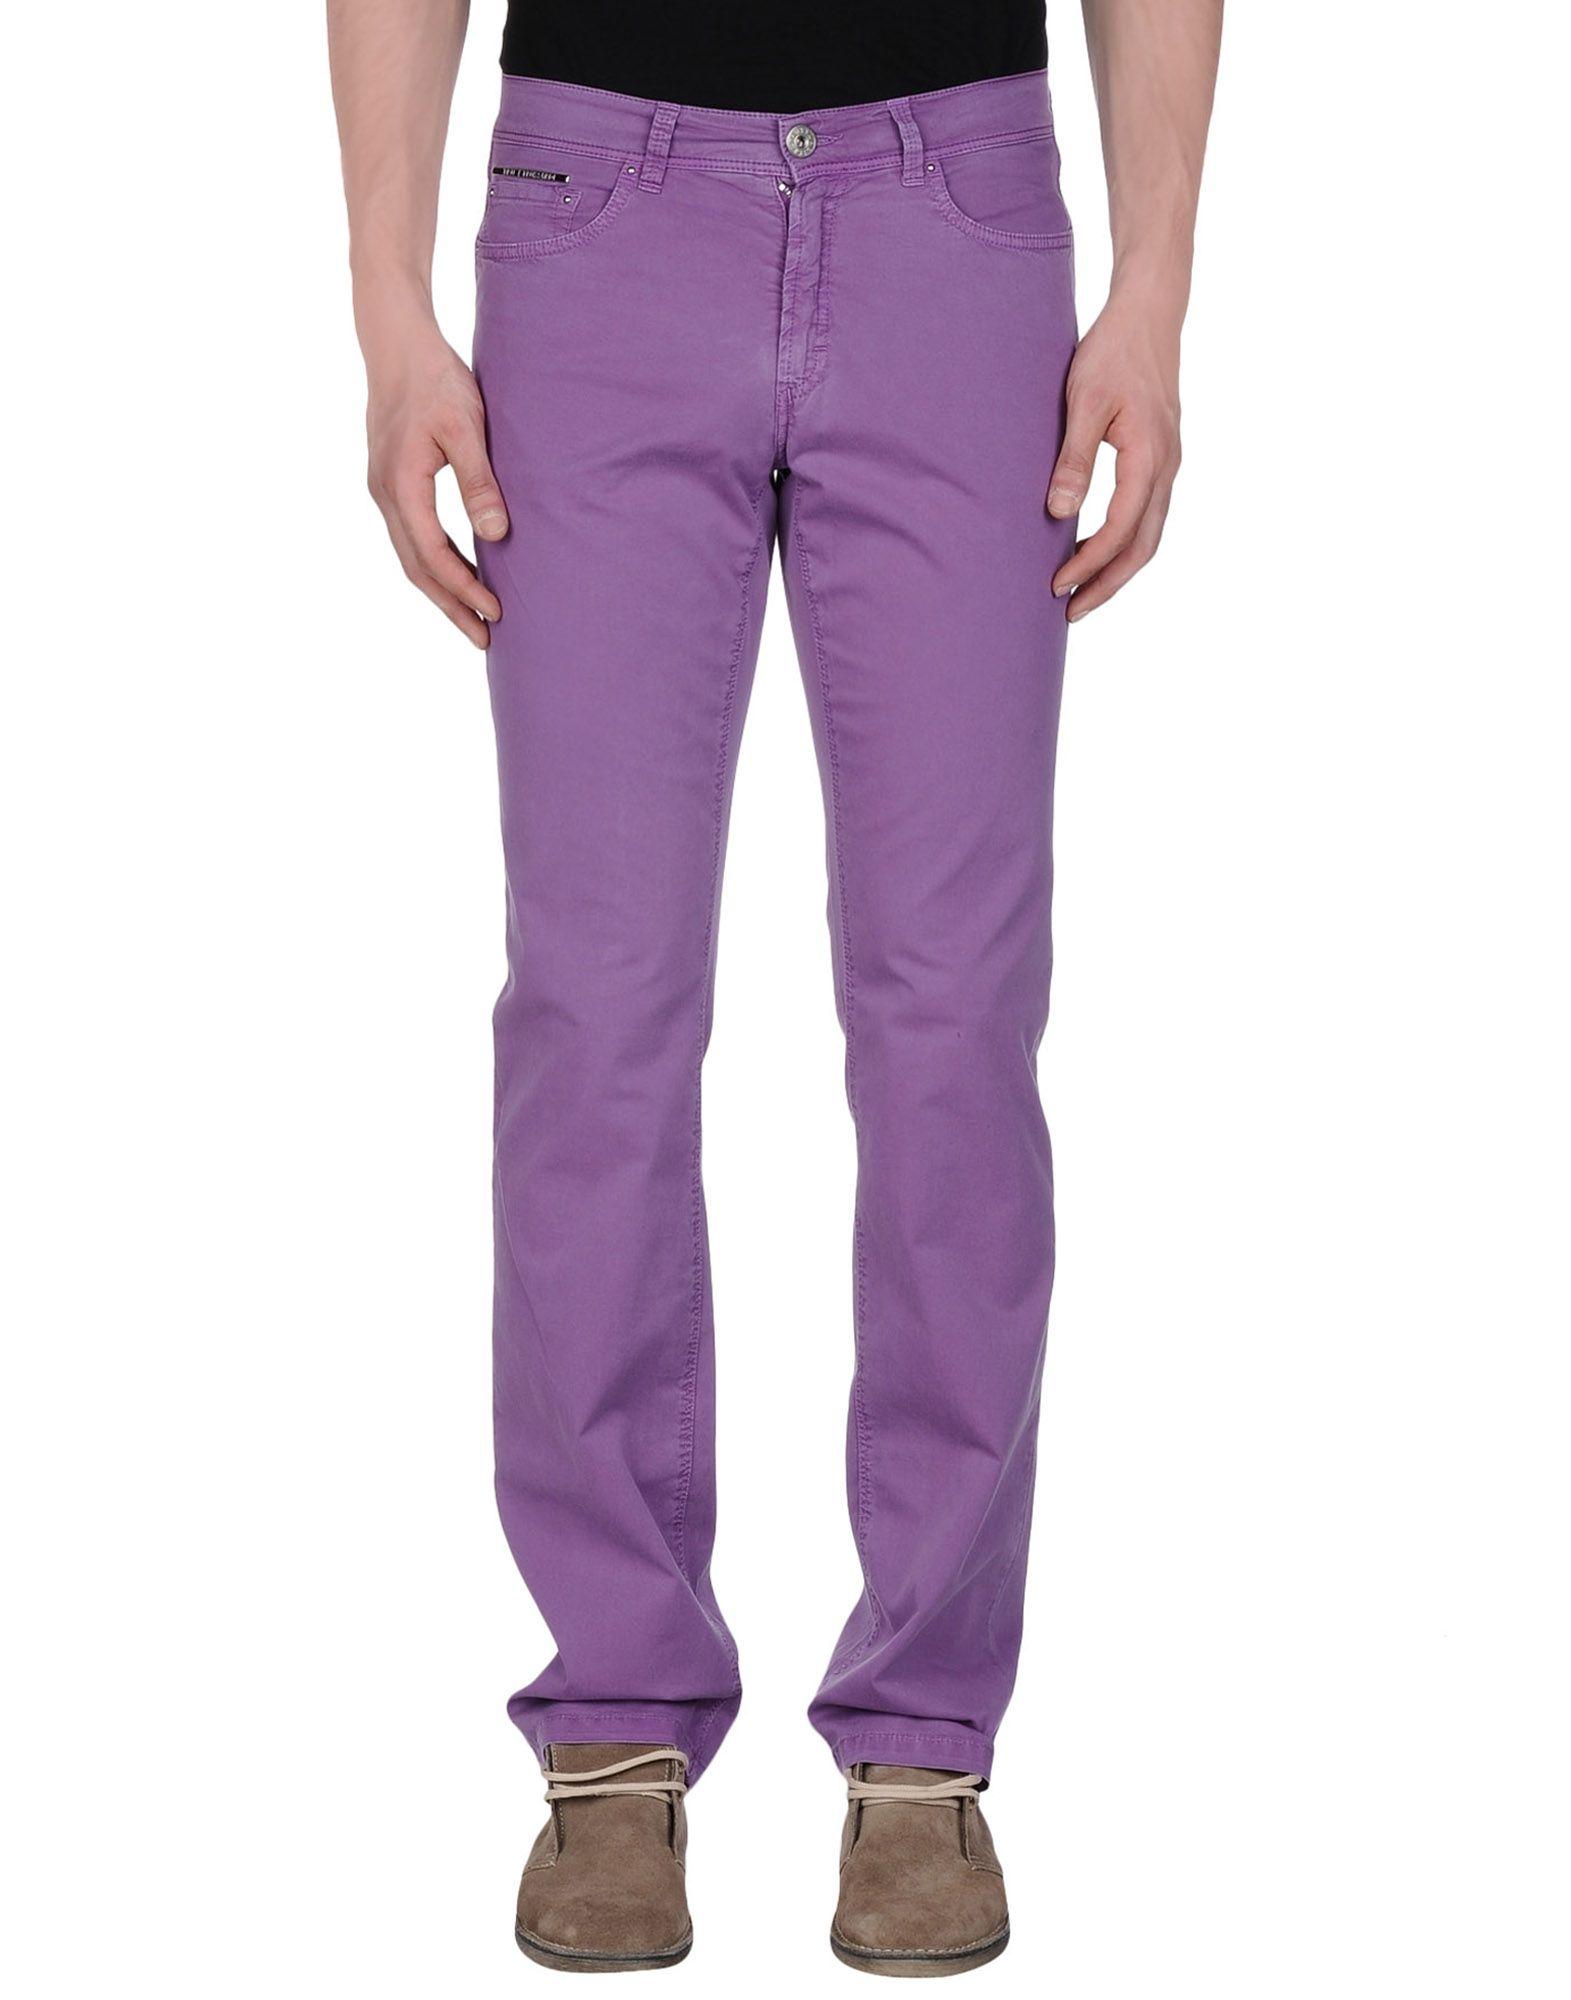 Pantalone modello jeans viola